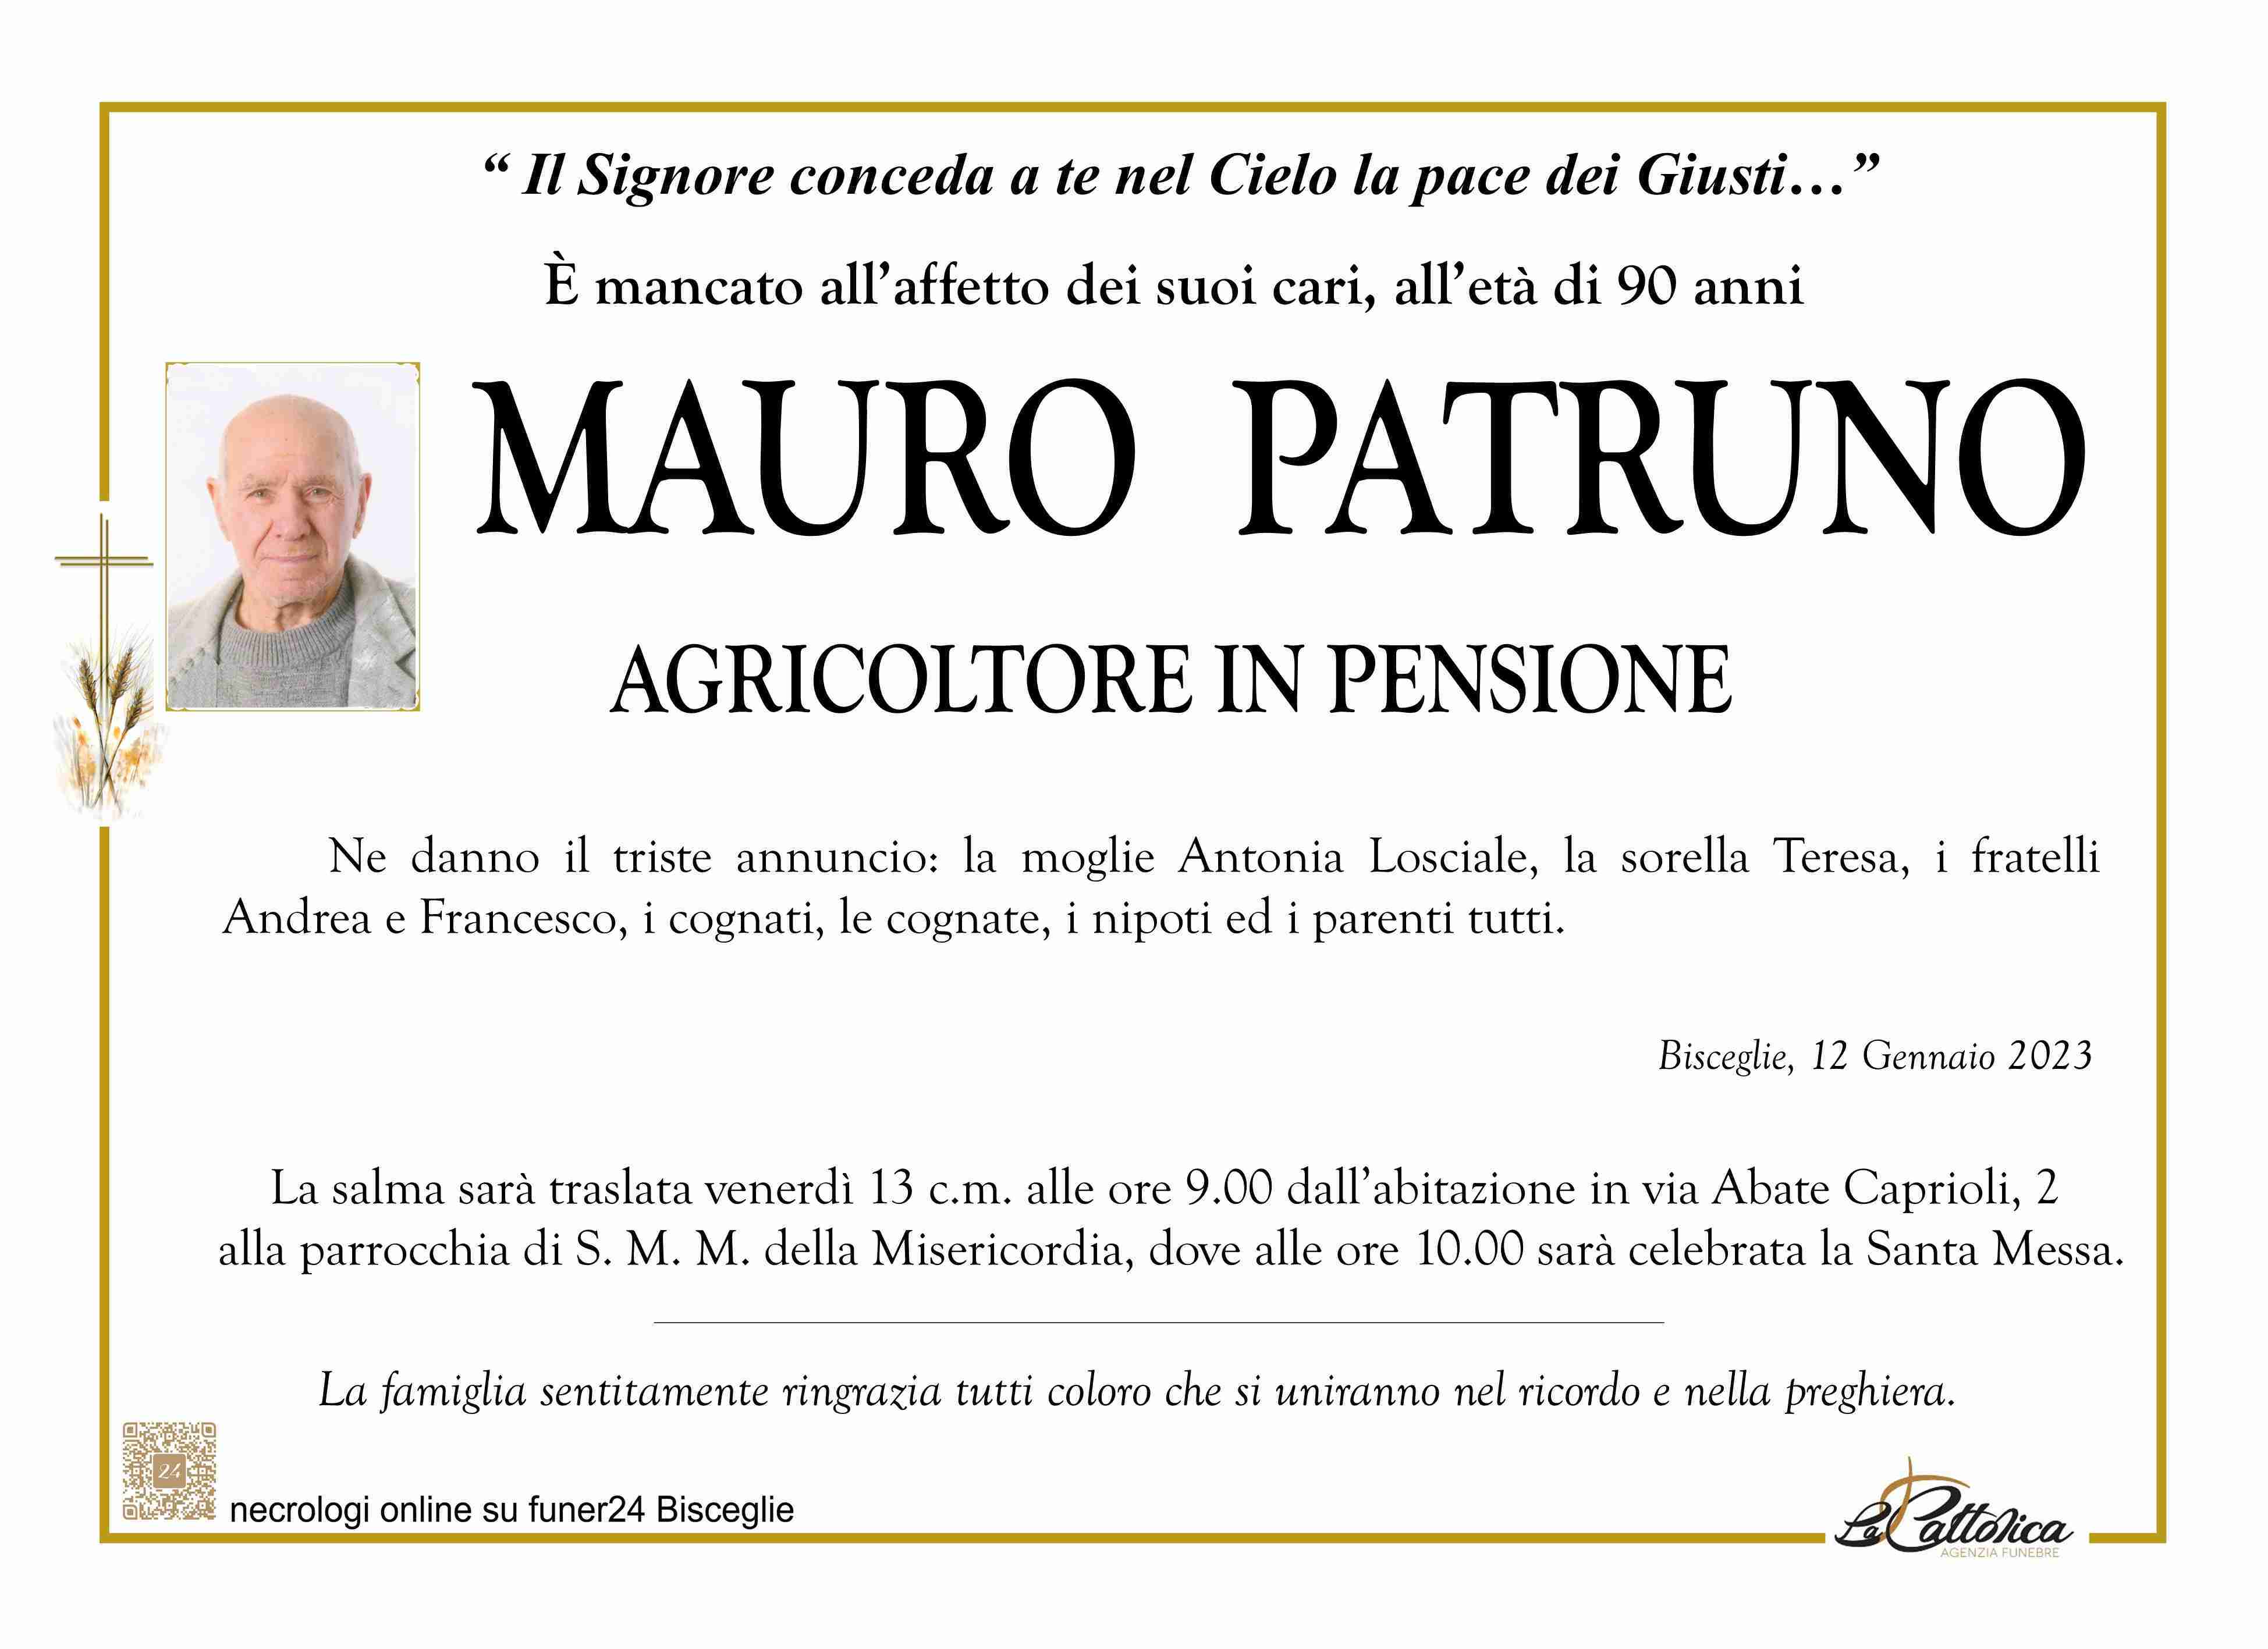 Mauro Patruno